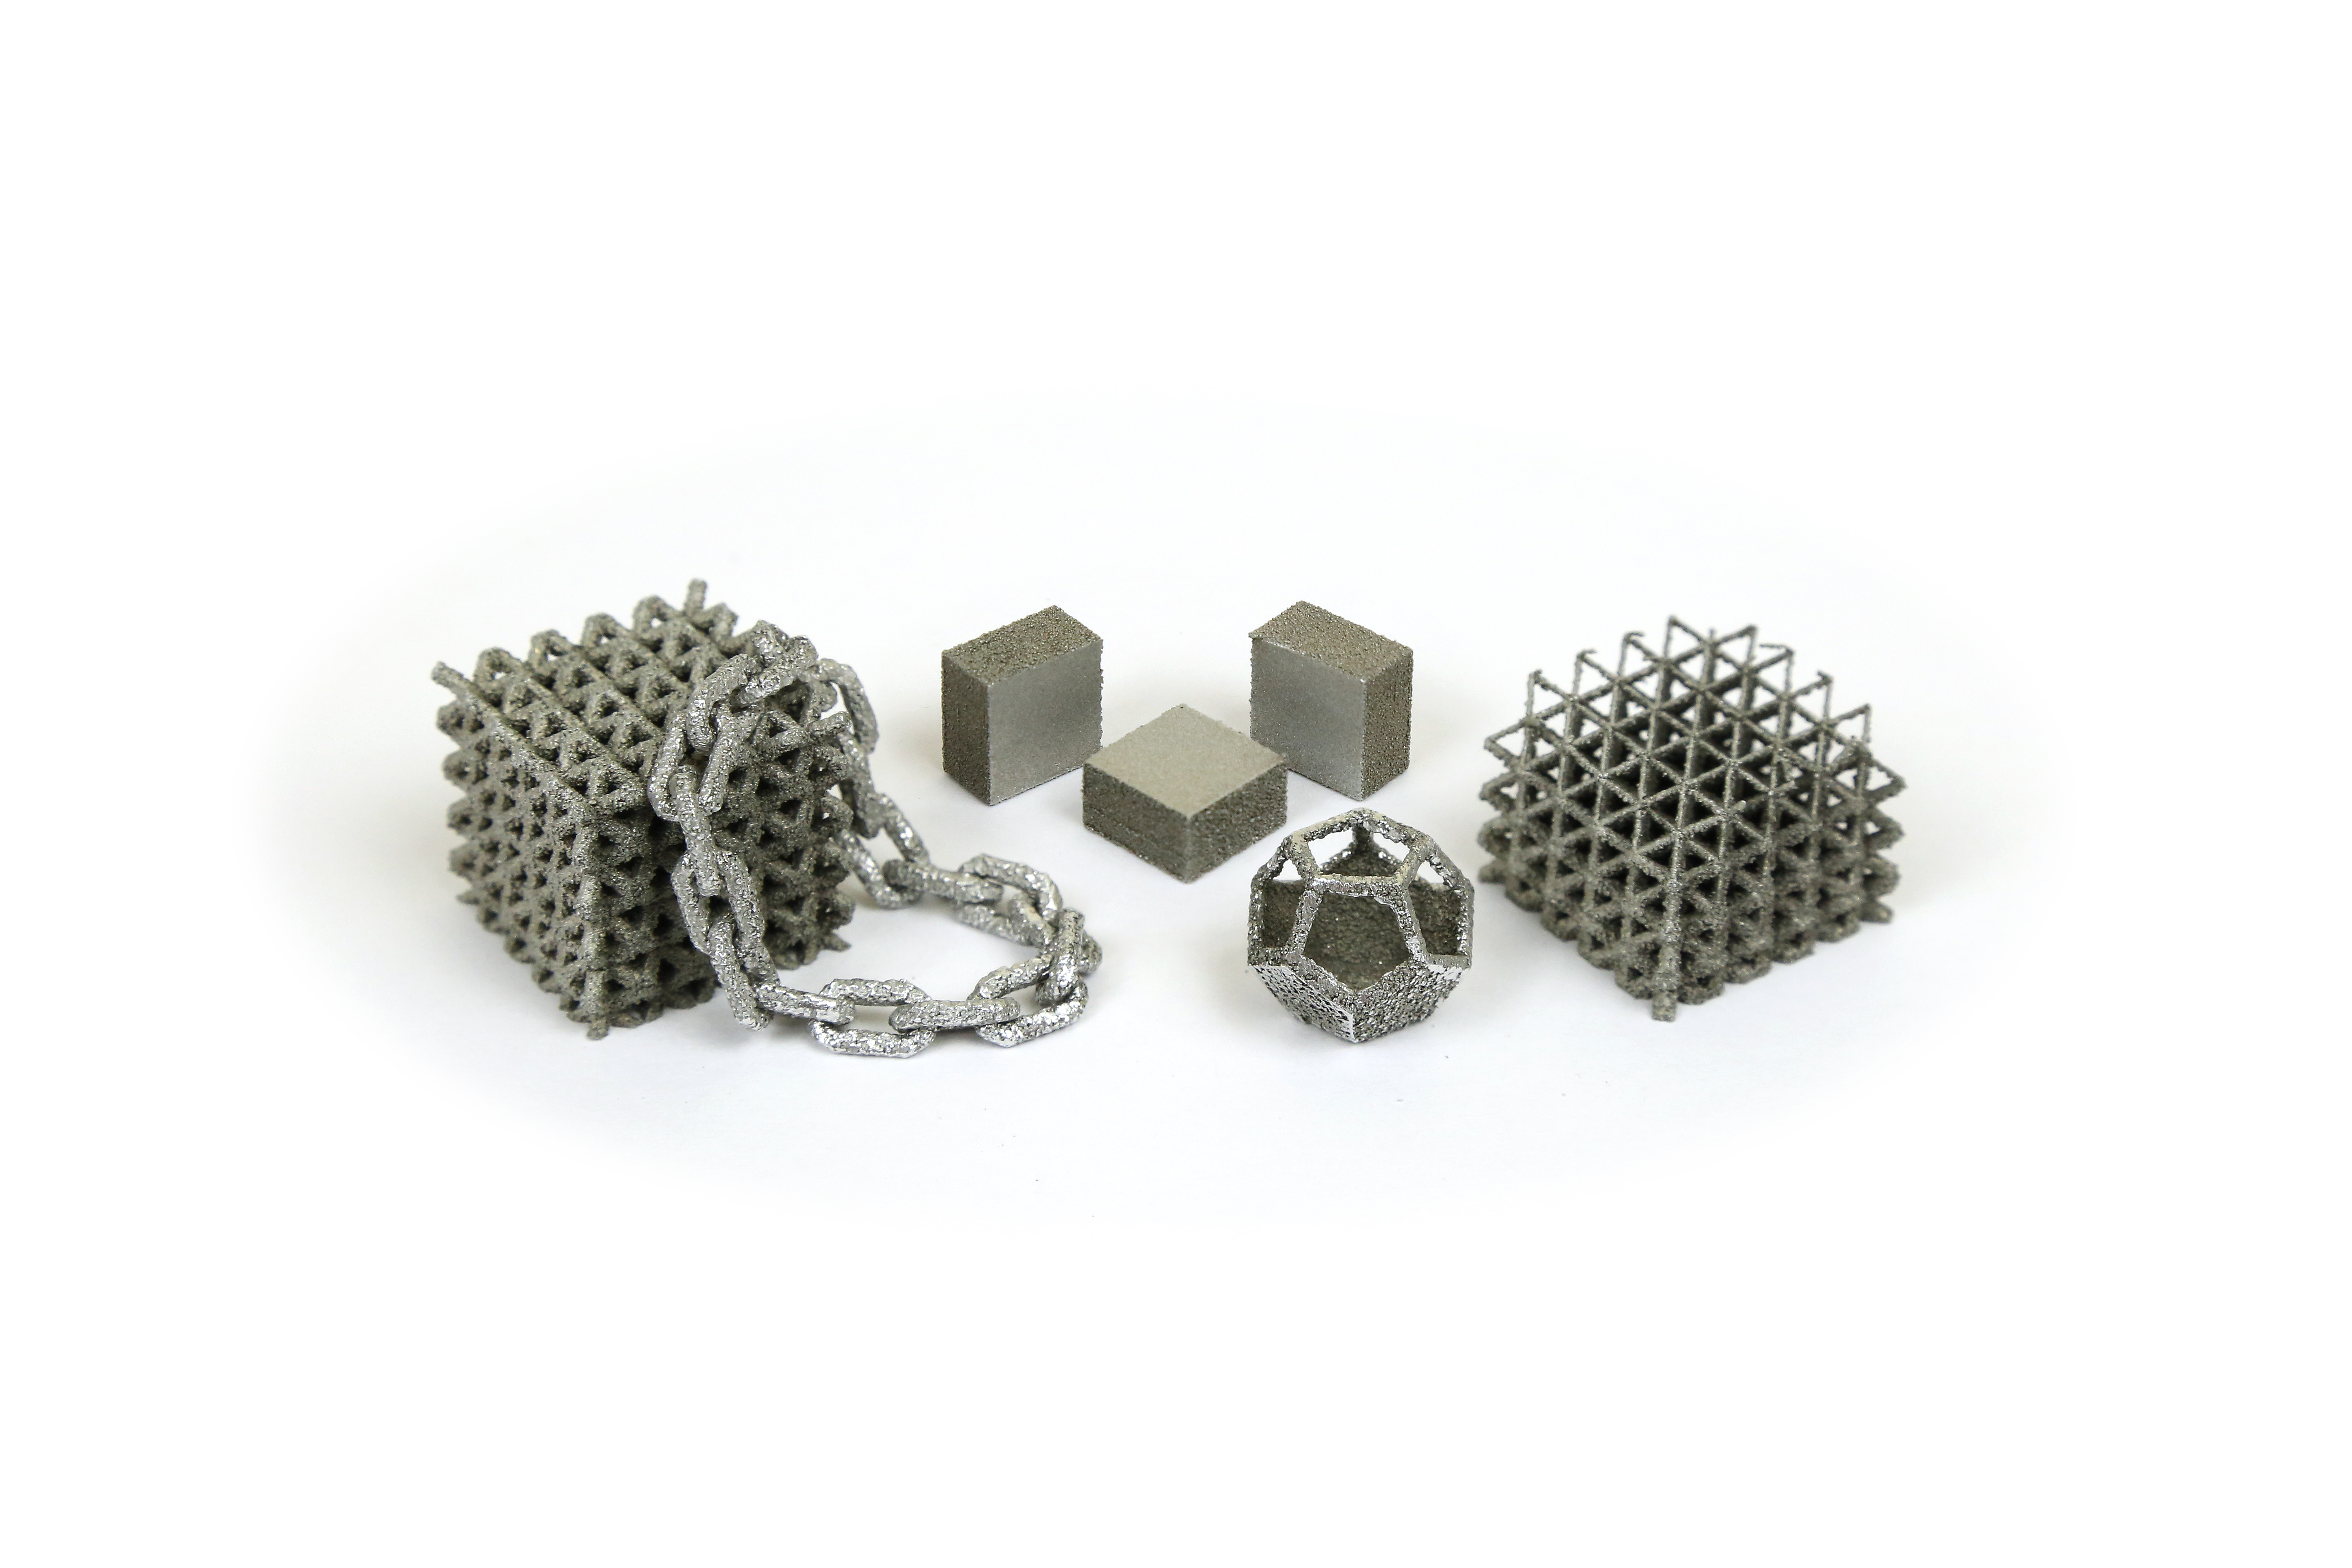 3D models produced using NanoAL's Addalloy aluminum powder. Photo via NanoAL